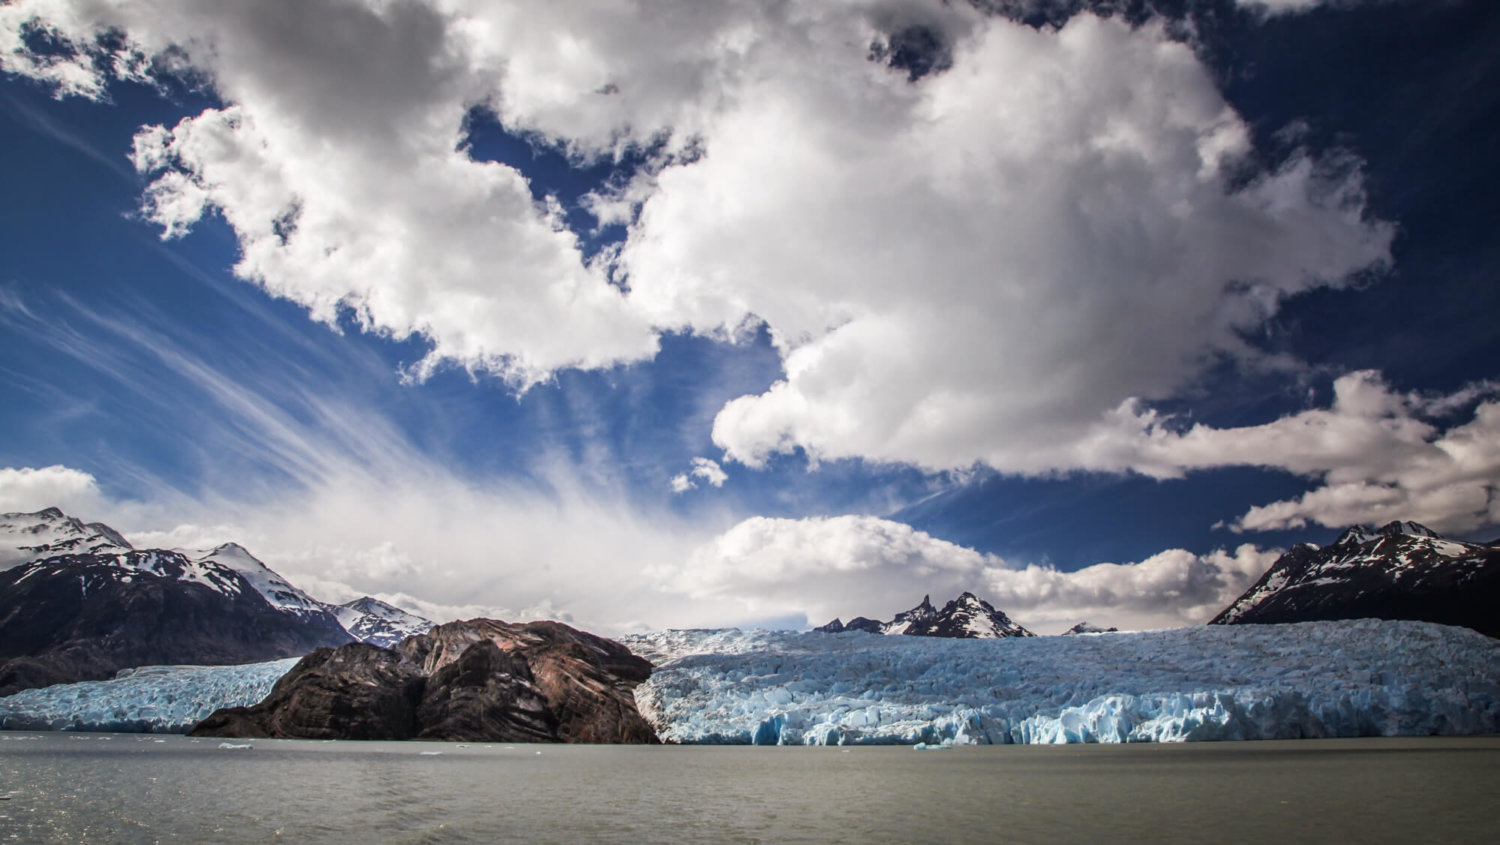 Glacier Grey from afar Patagonia